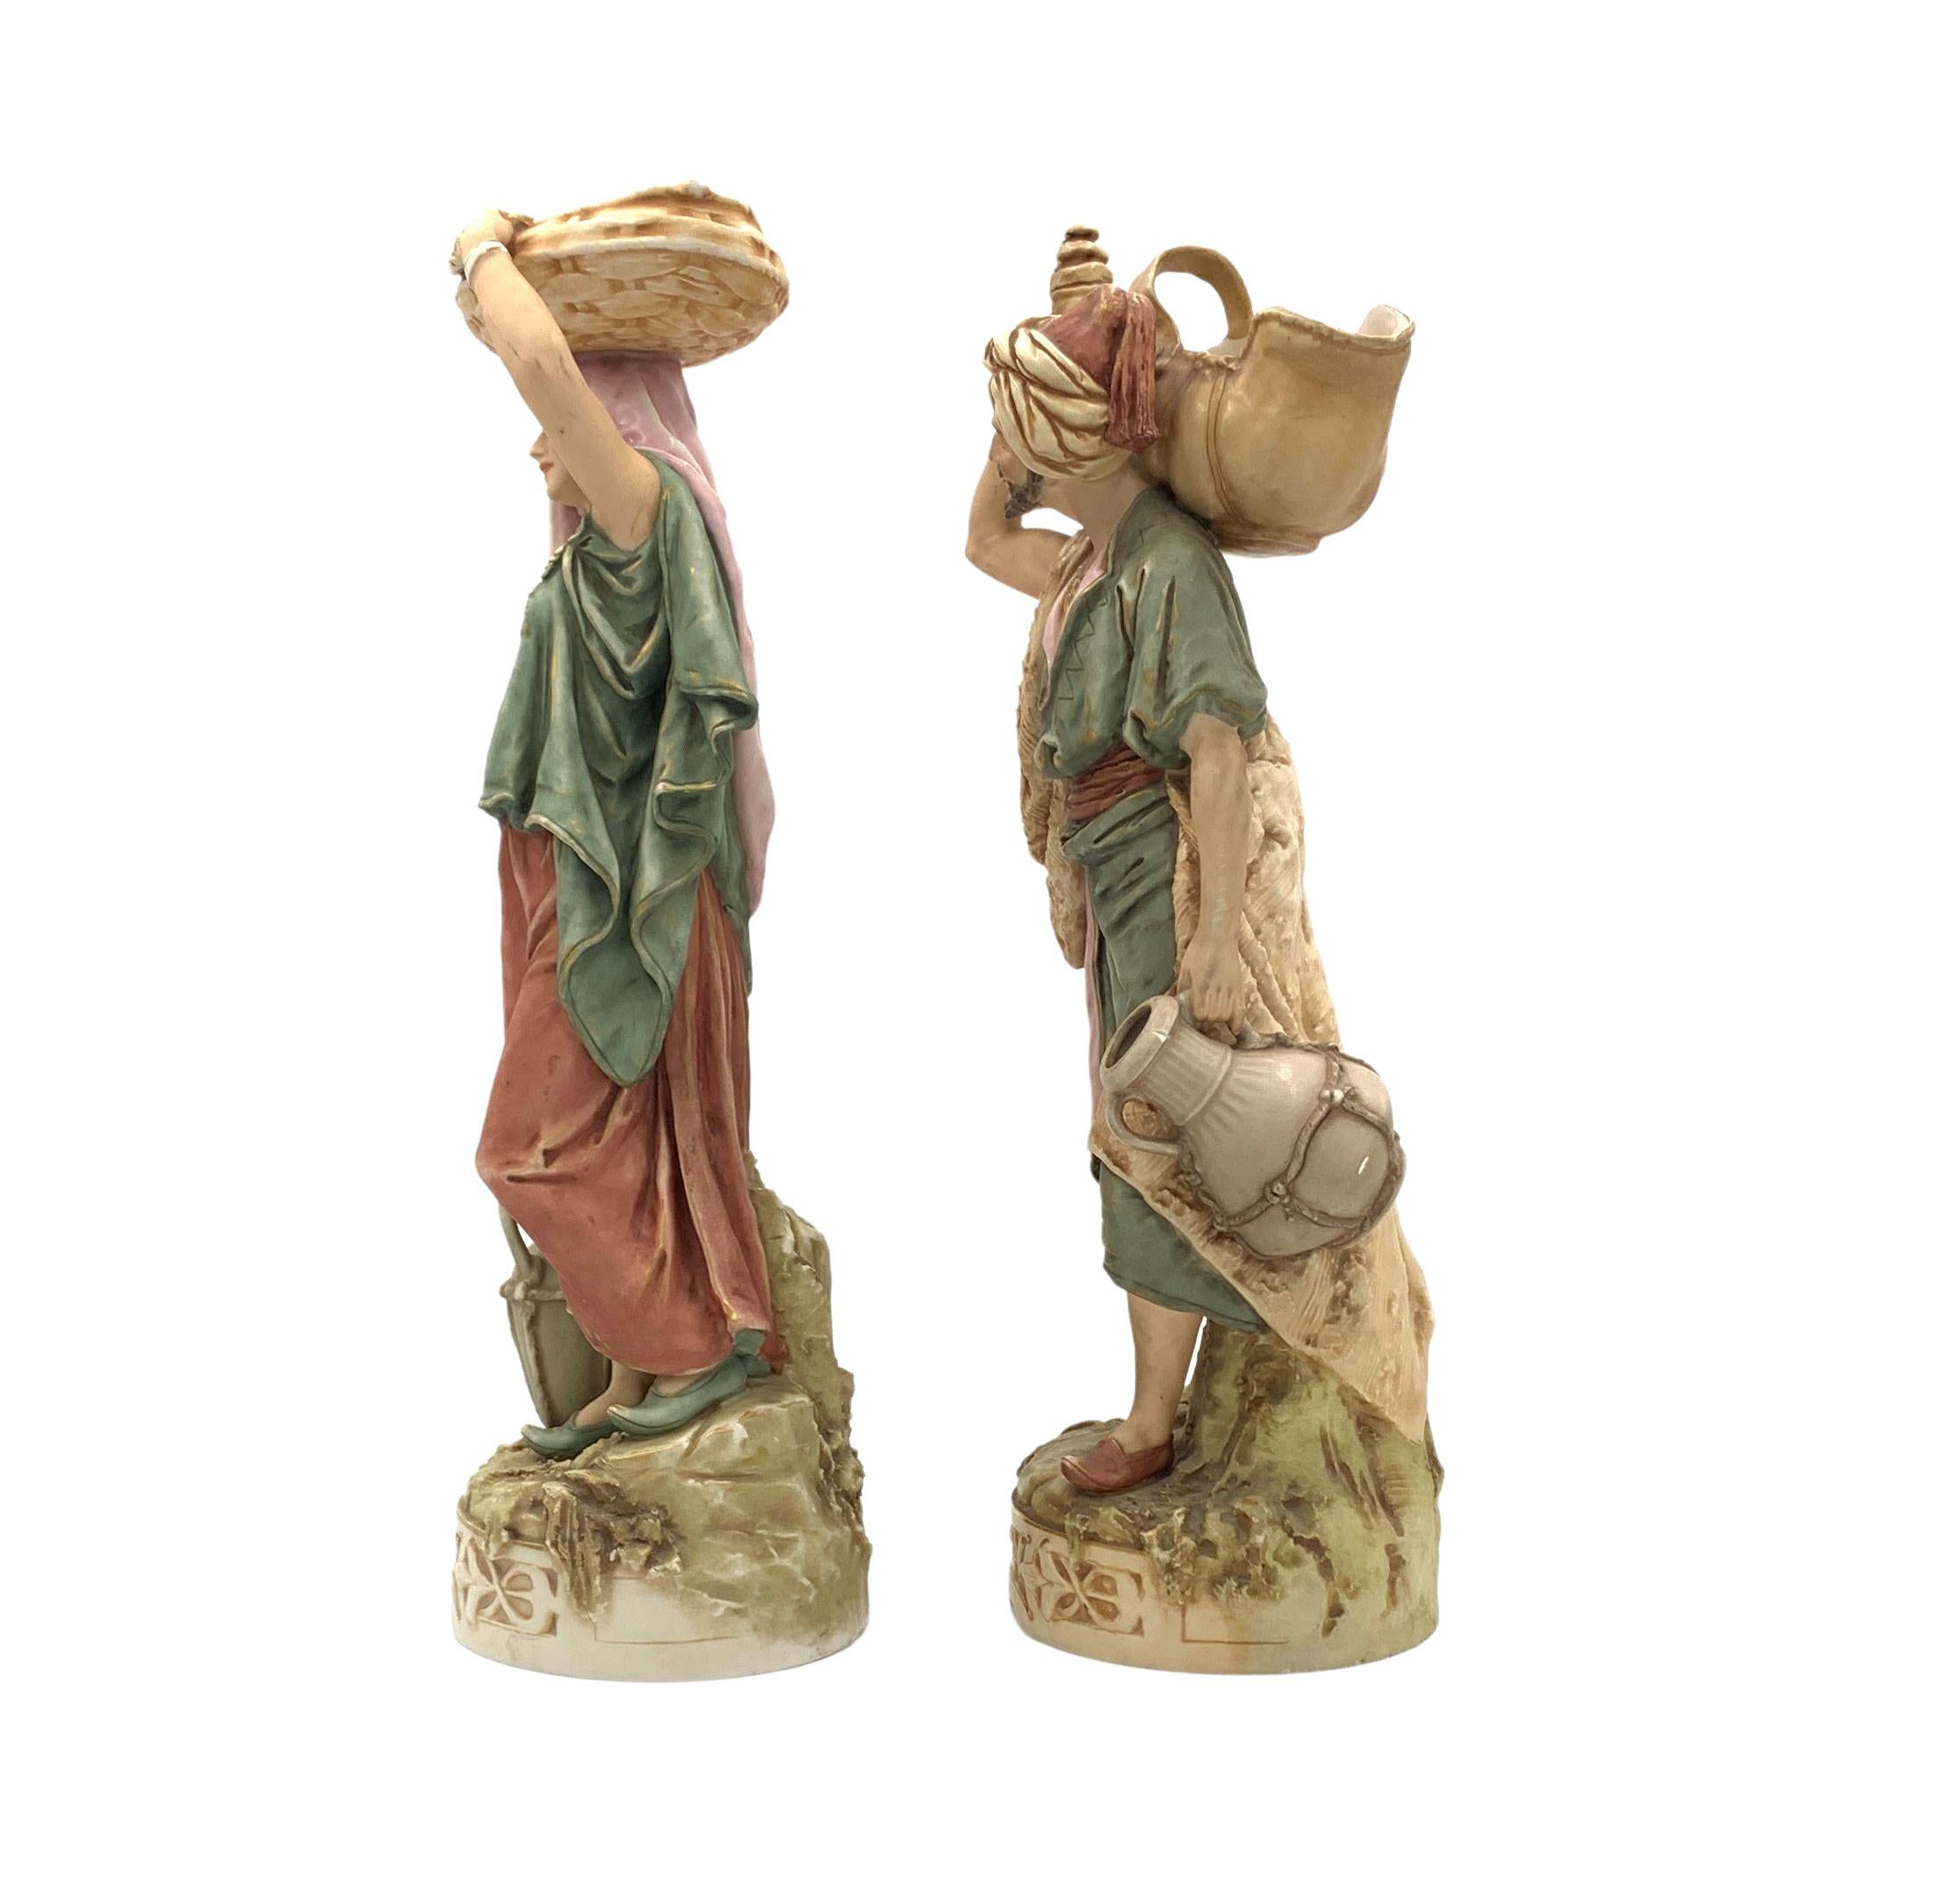 Paar Royal Dux Bohemia Porzellanfiguren eines östlichen Wasserträger und seine Begleiterin, Eine feine böhmische Royal Dux Porzellanfigur, wurde dieses Paar in der Tschechoslowakei zwischen 1900-1918 gemacht, Er trägt ein Horn-förmigen konischen